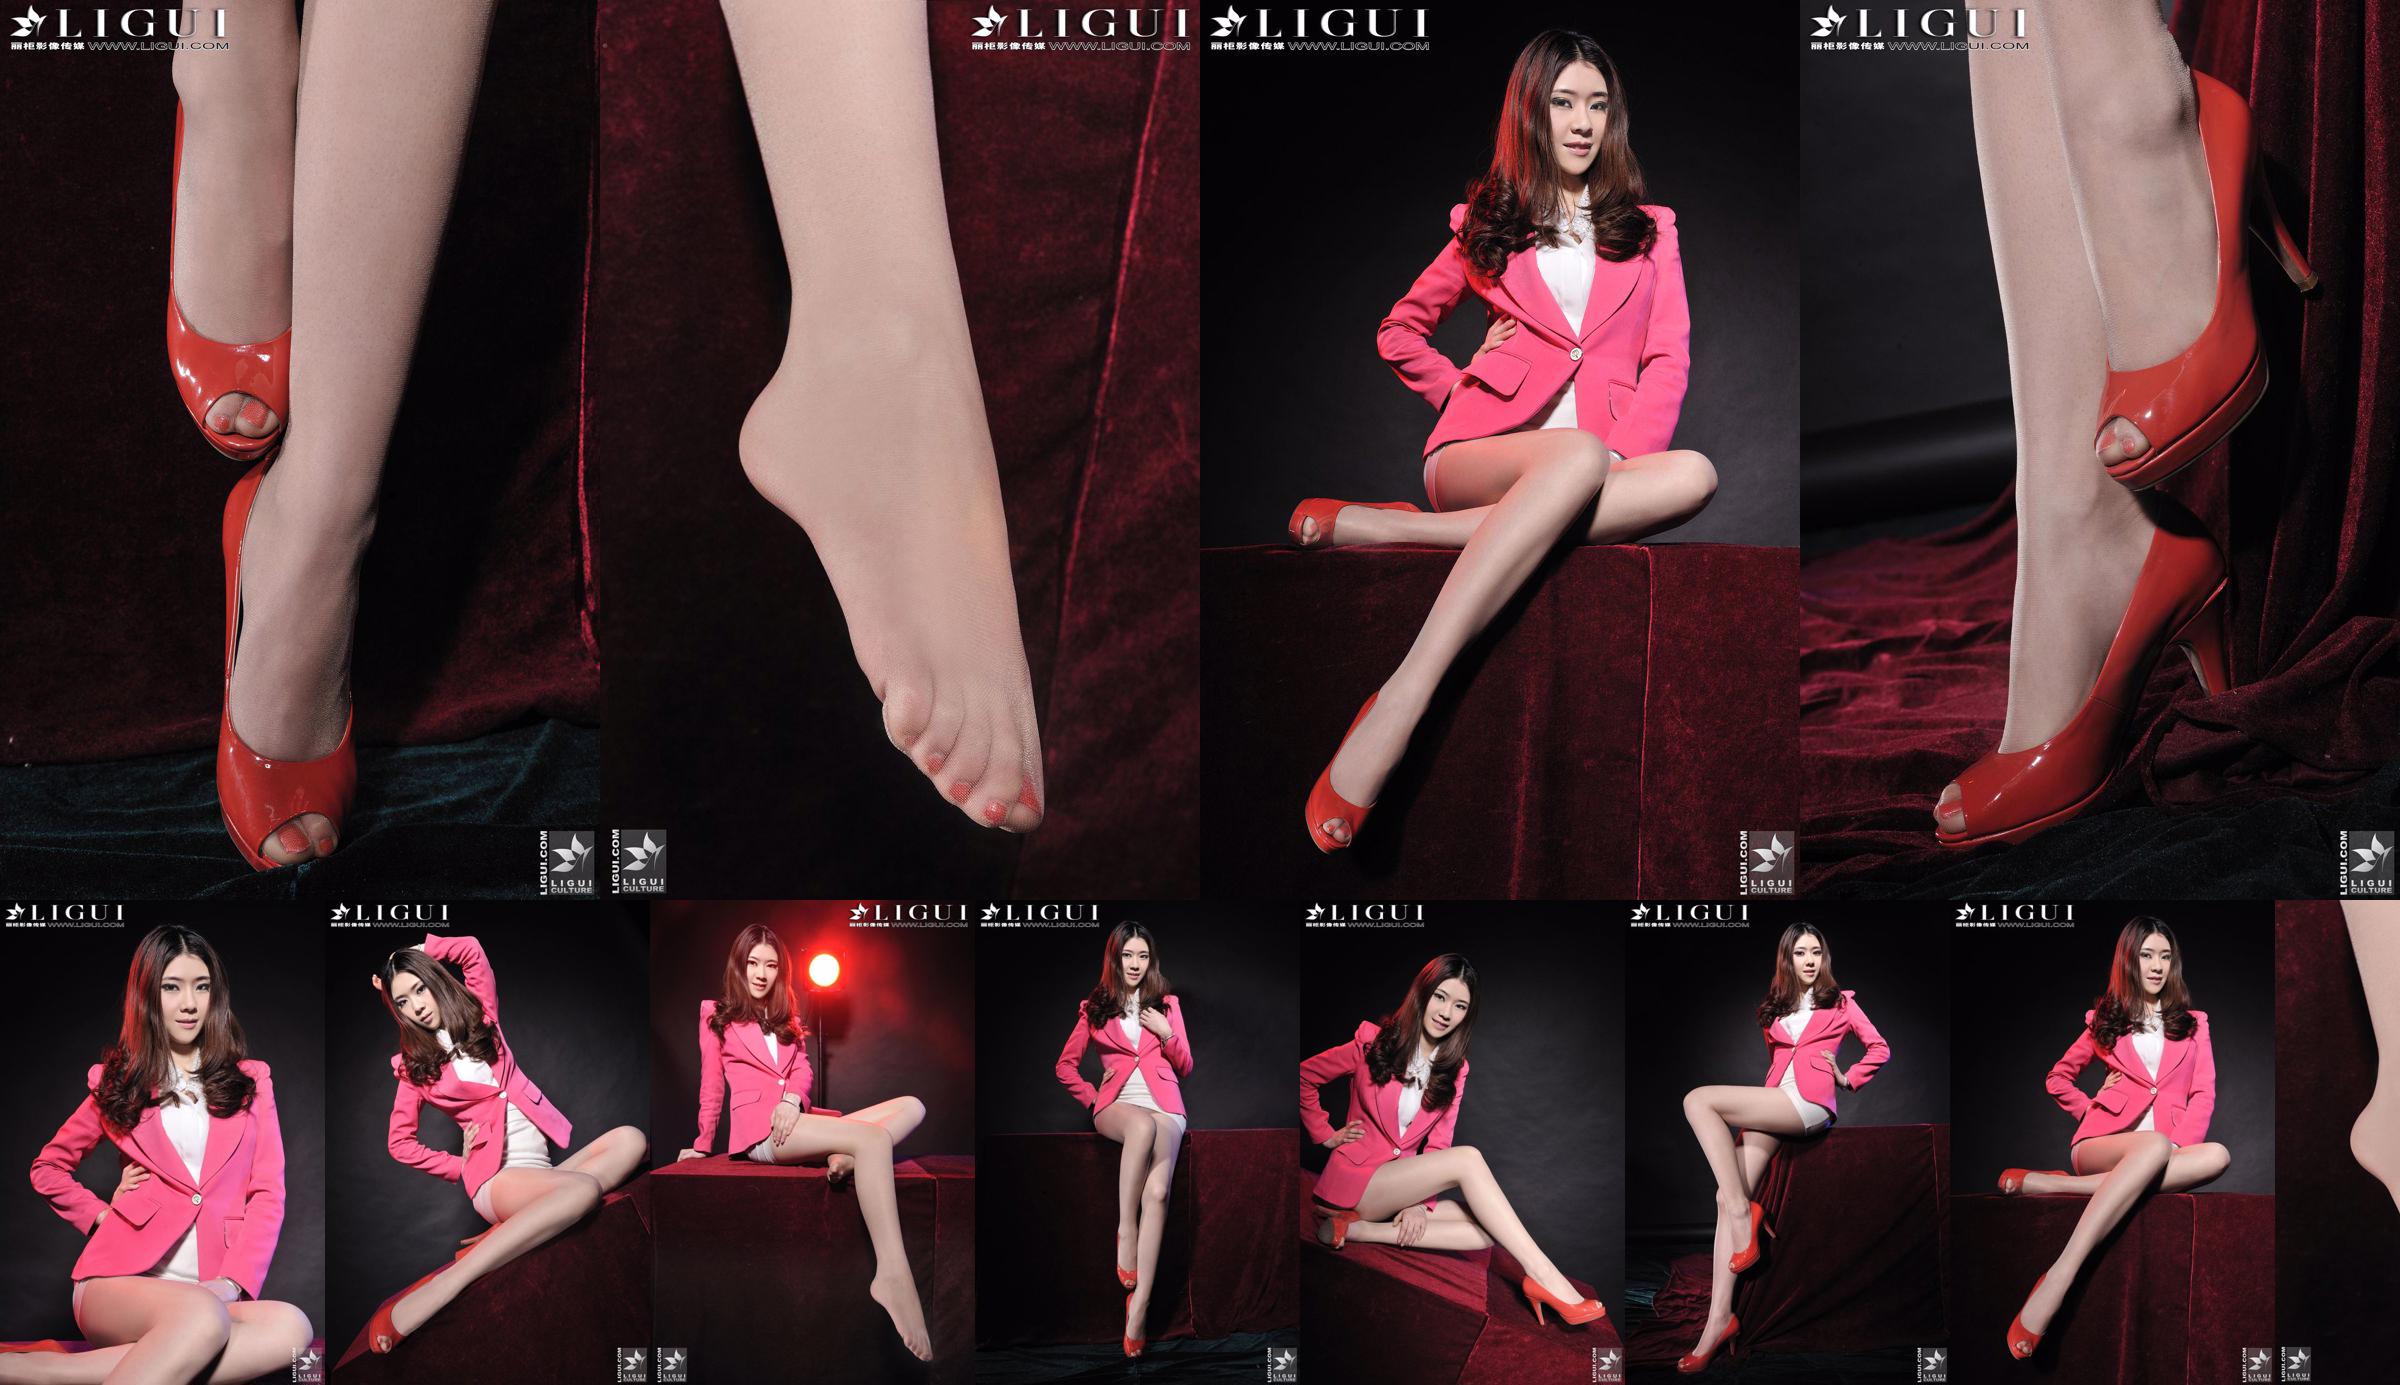 モデルチェンチェン「赤いハイヒールガール」[丽柜LiGui]美しい脚と翡翠の足の写真写真 No.0a62a3 ページ1